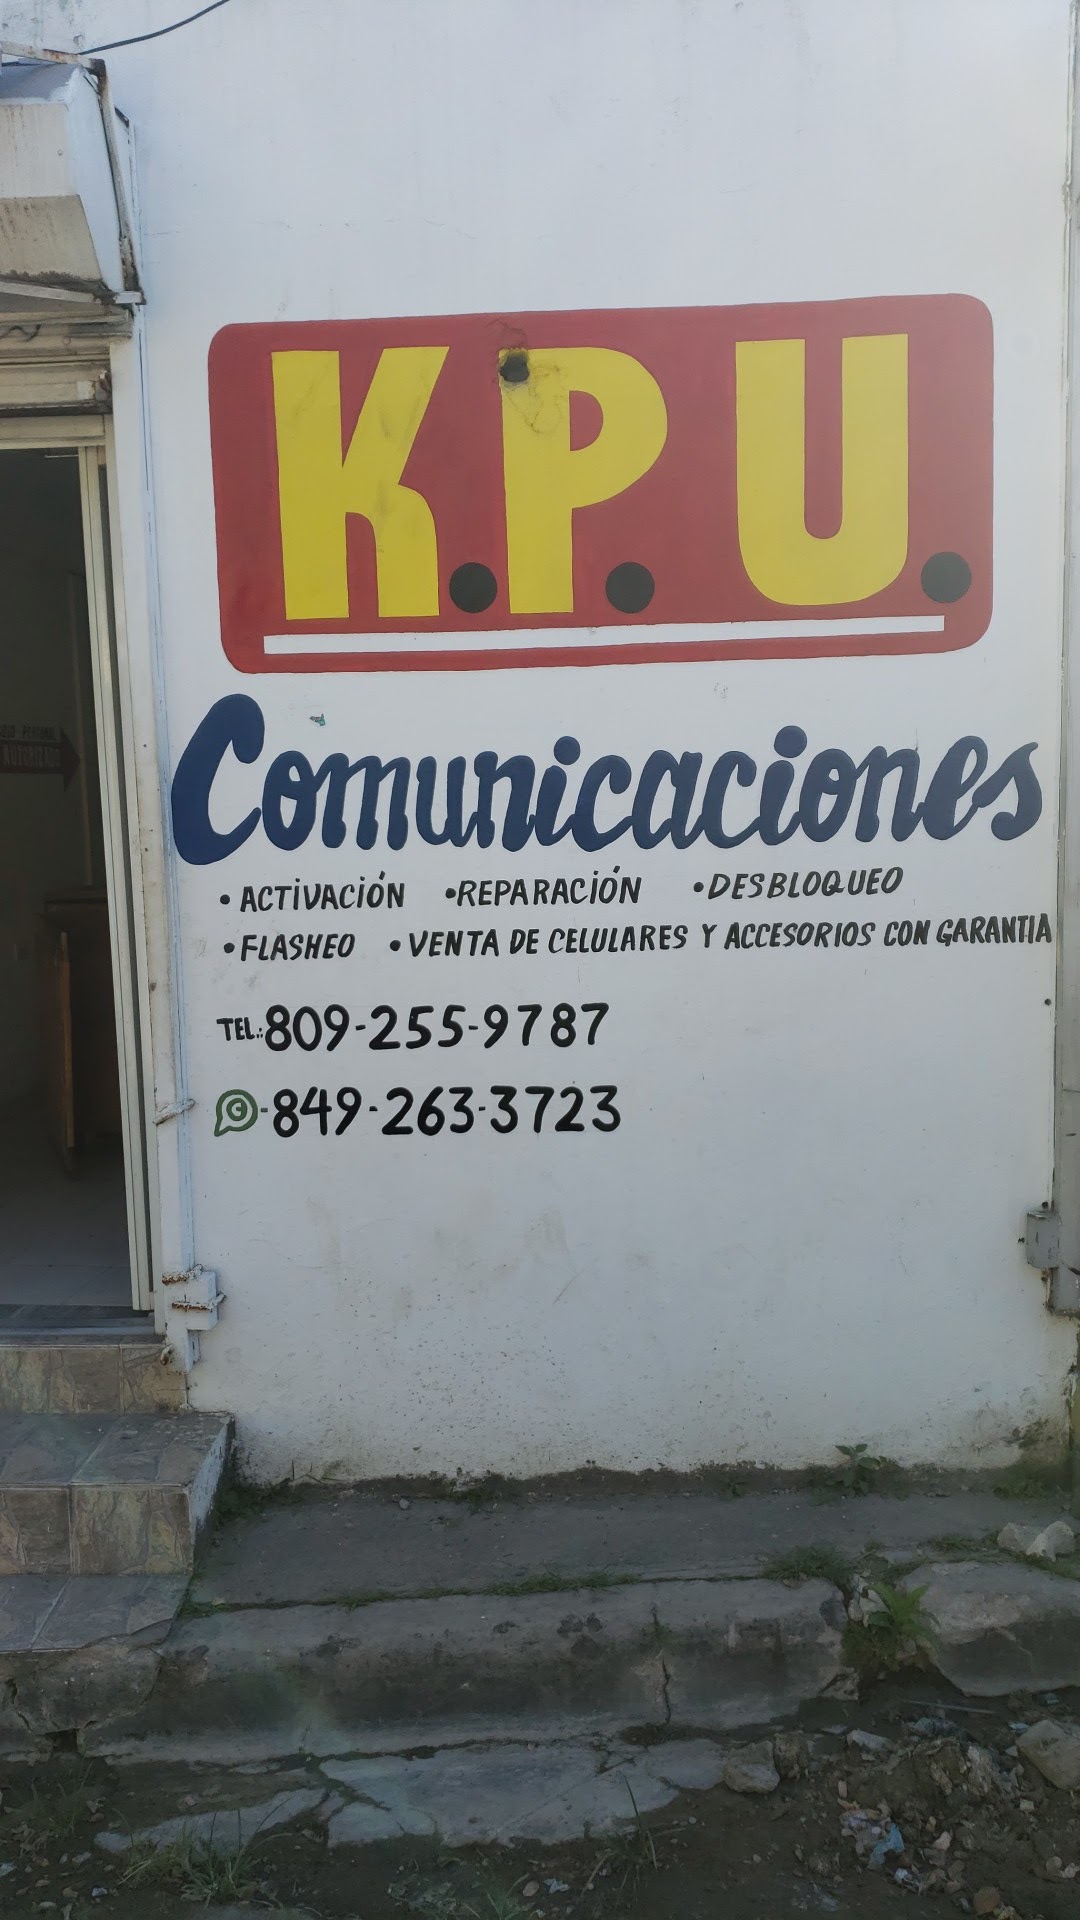 KPU COMUNICACIONES EIRL